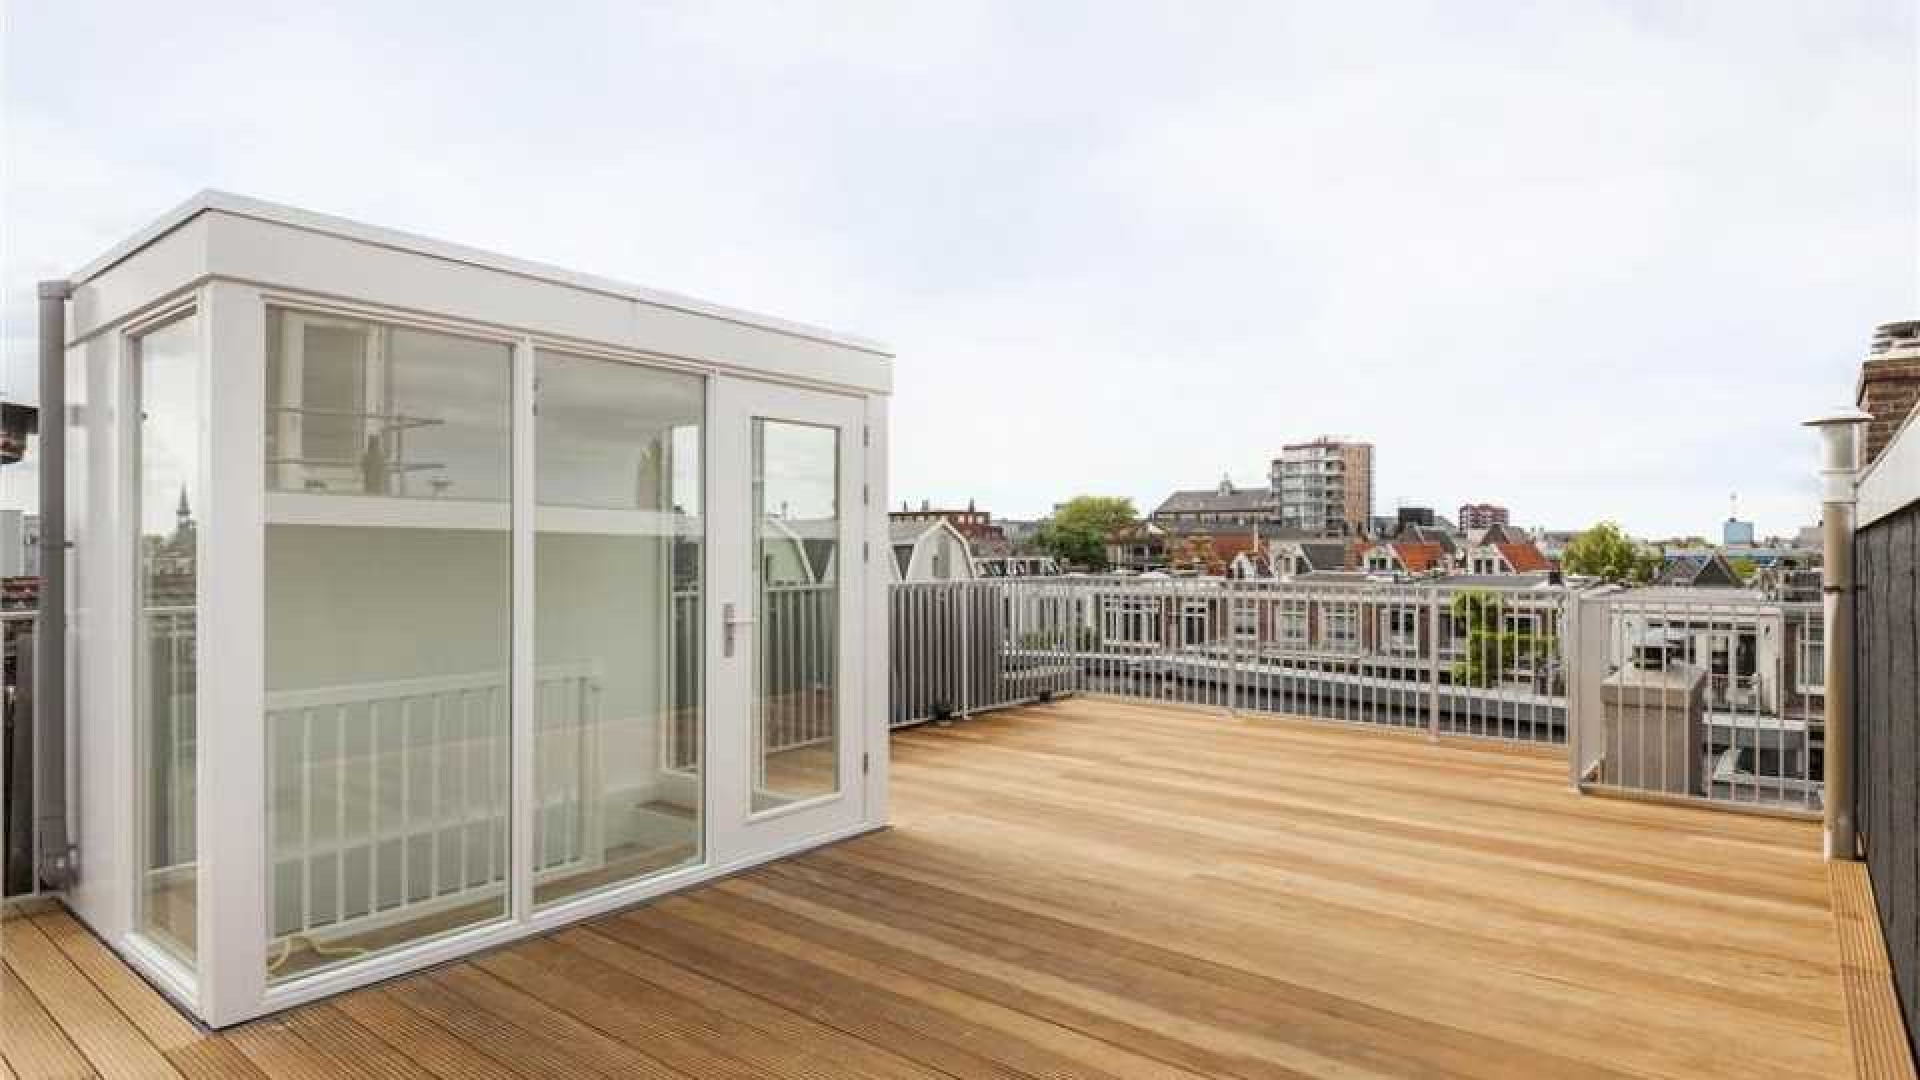 Prins Bernhard jr. verkoopt zijn dubbele bovenhuis in Amsterdam. Zie foto's